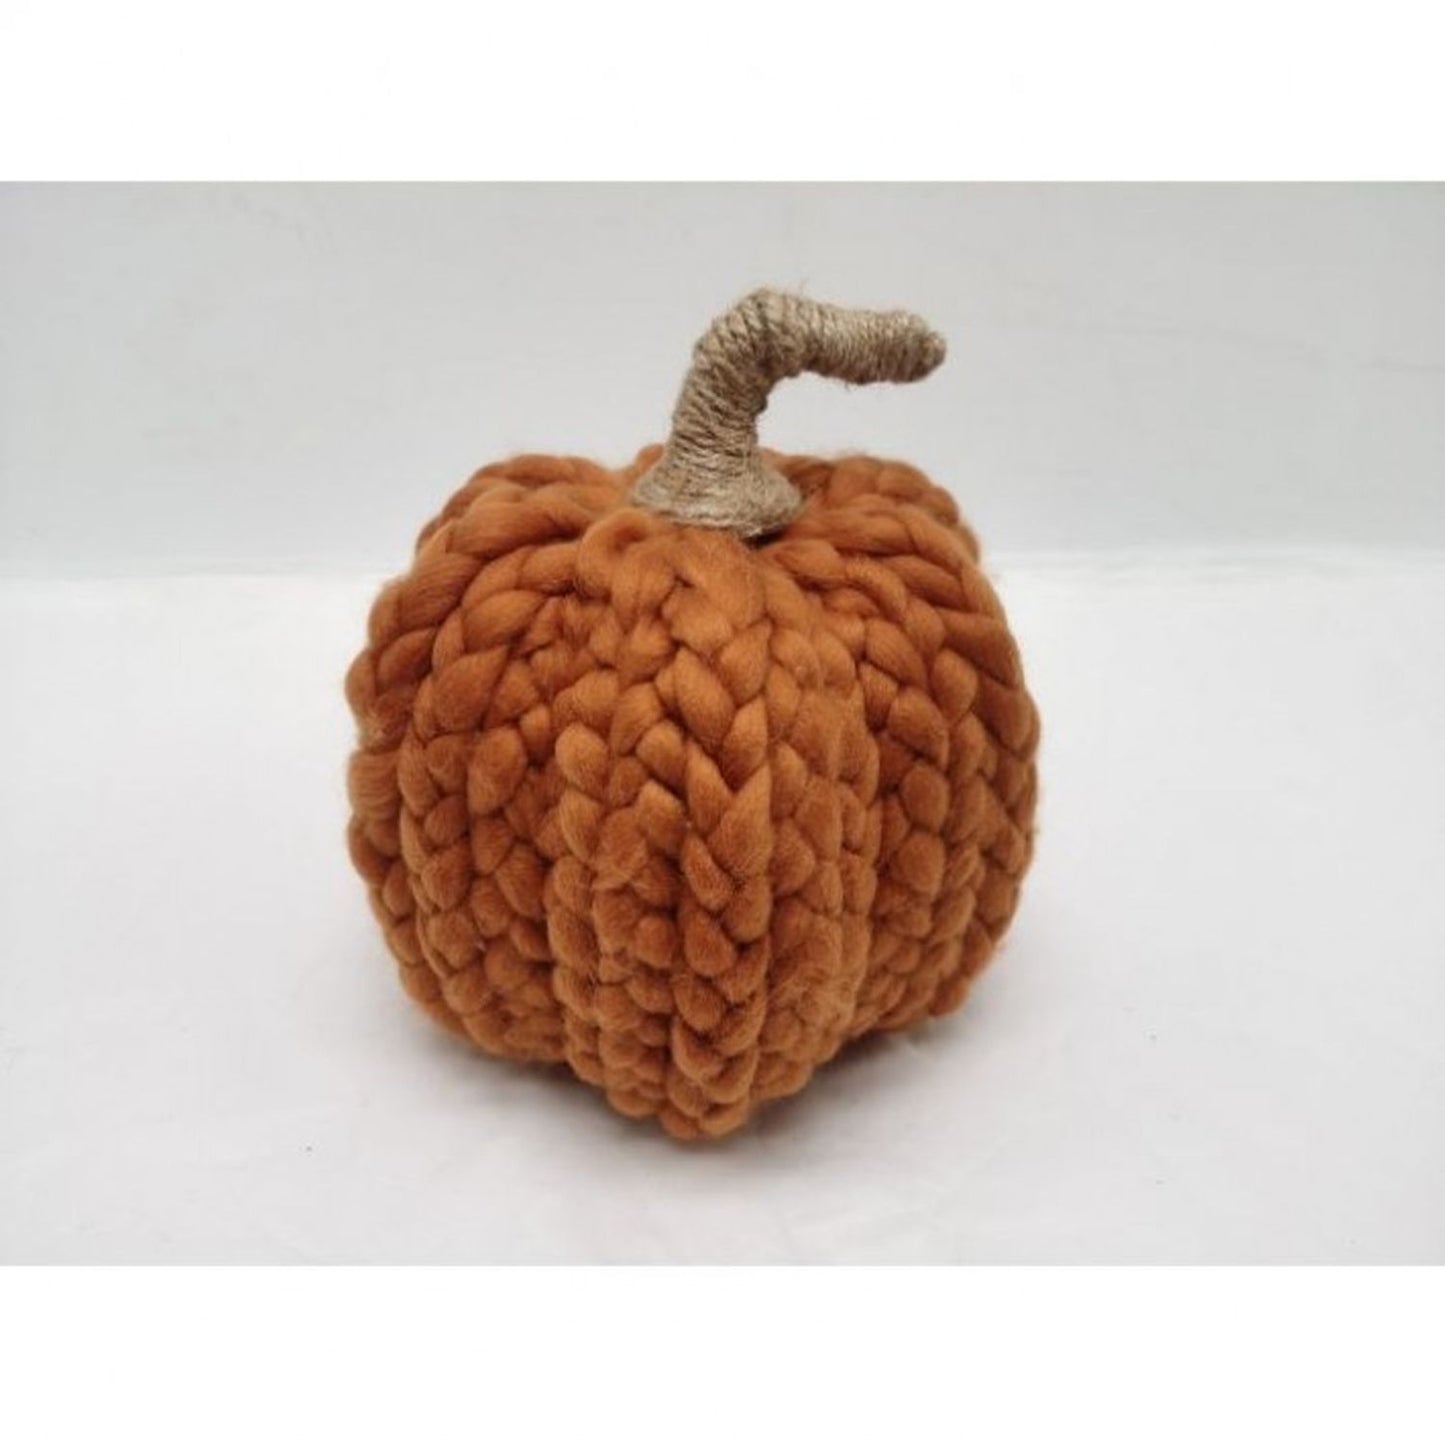 Regency International 8.5" Woven Yarn Pumpkin